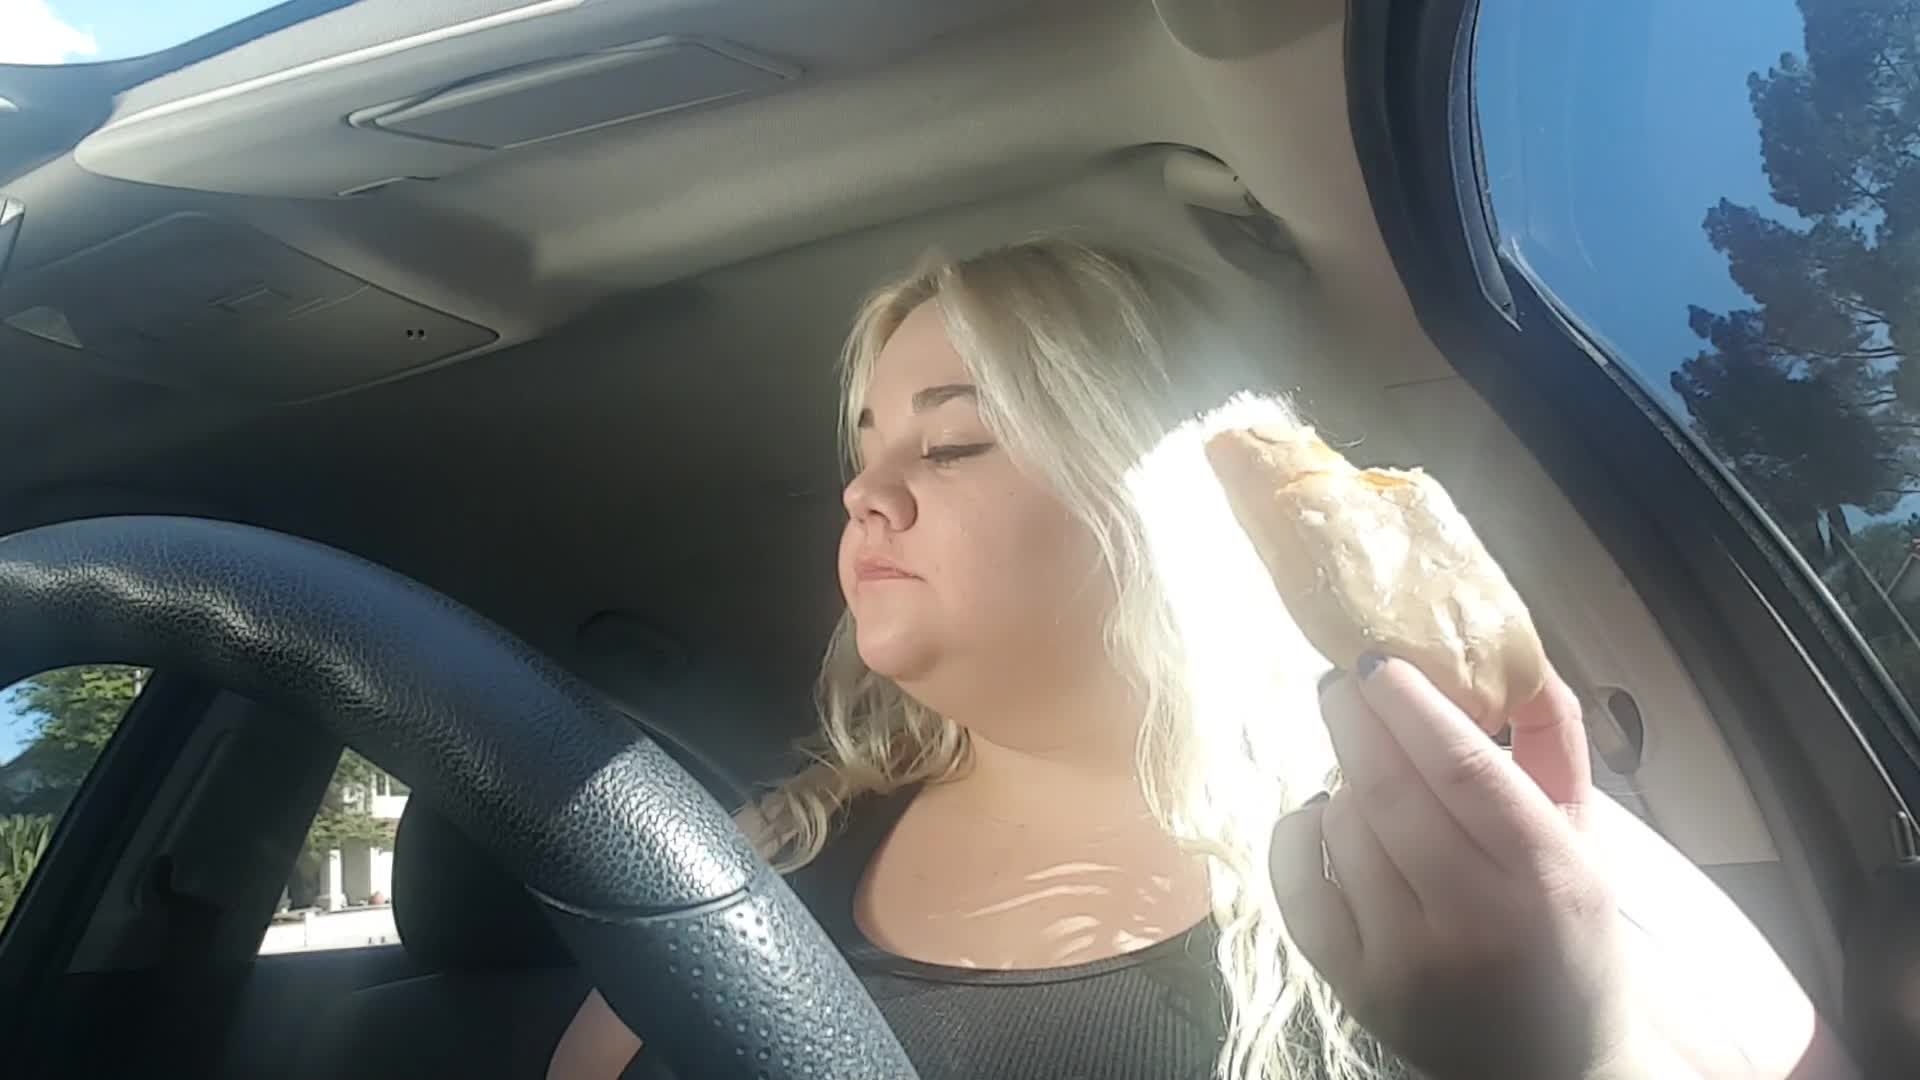 Donut In Car